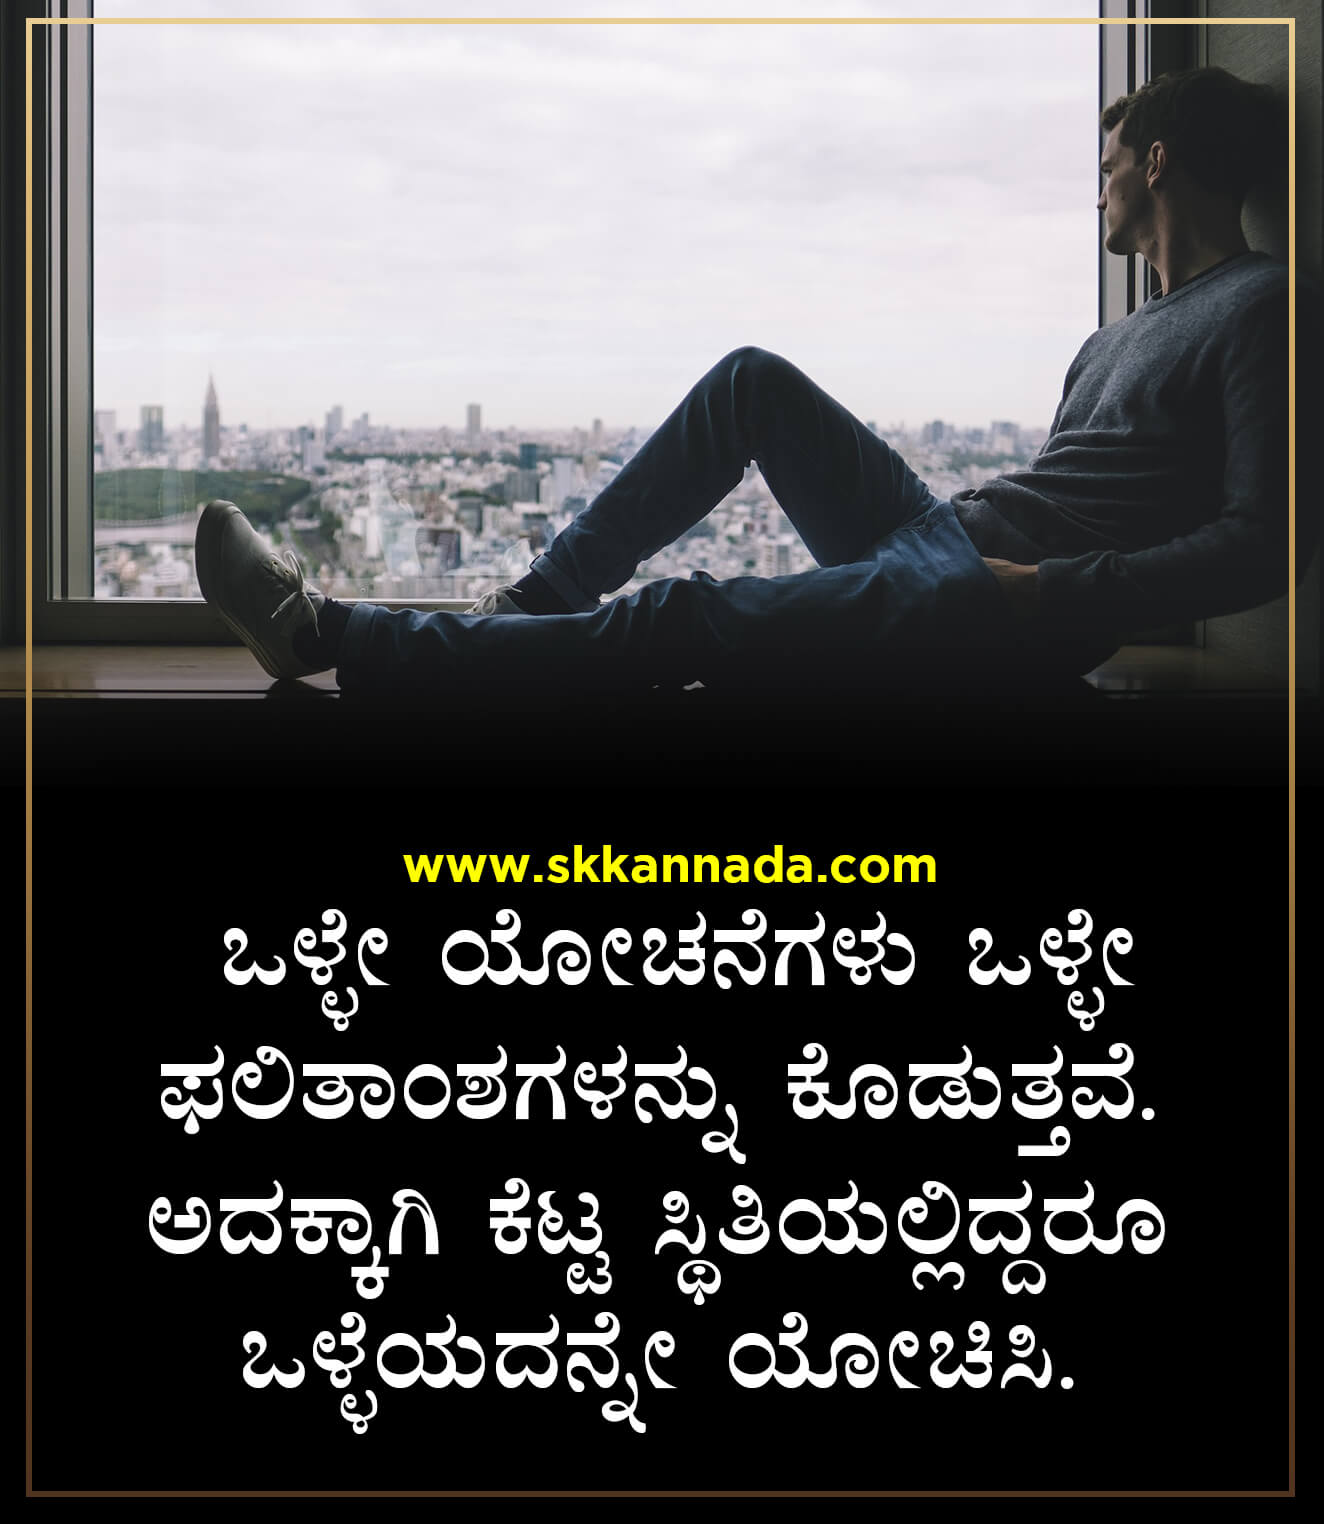 35+ ಪೊಜಿಟಿವ್ ಕೊಟ್ಸಗಳು - Positive Quotes in Kannada - Kannada Quotes